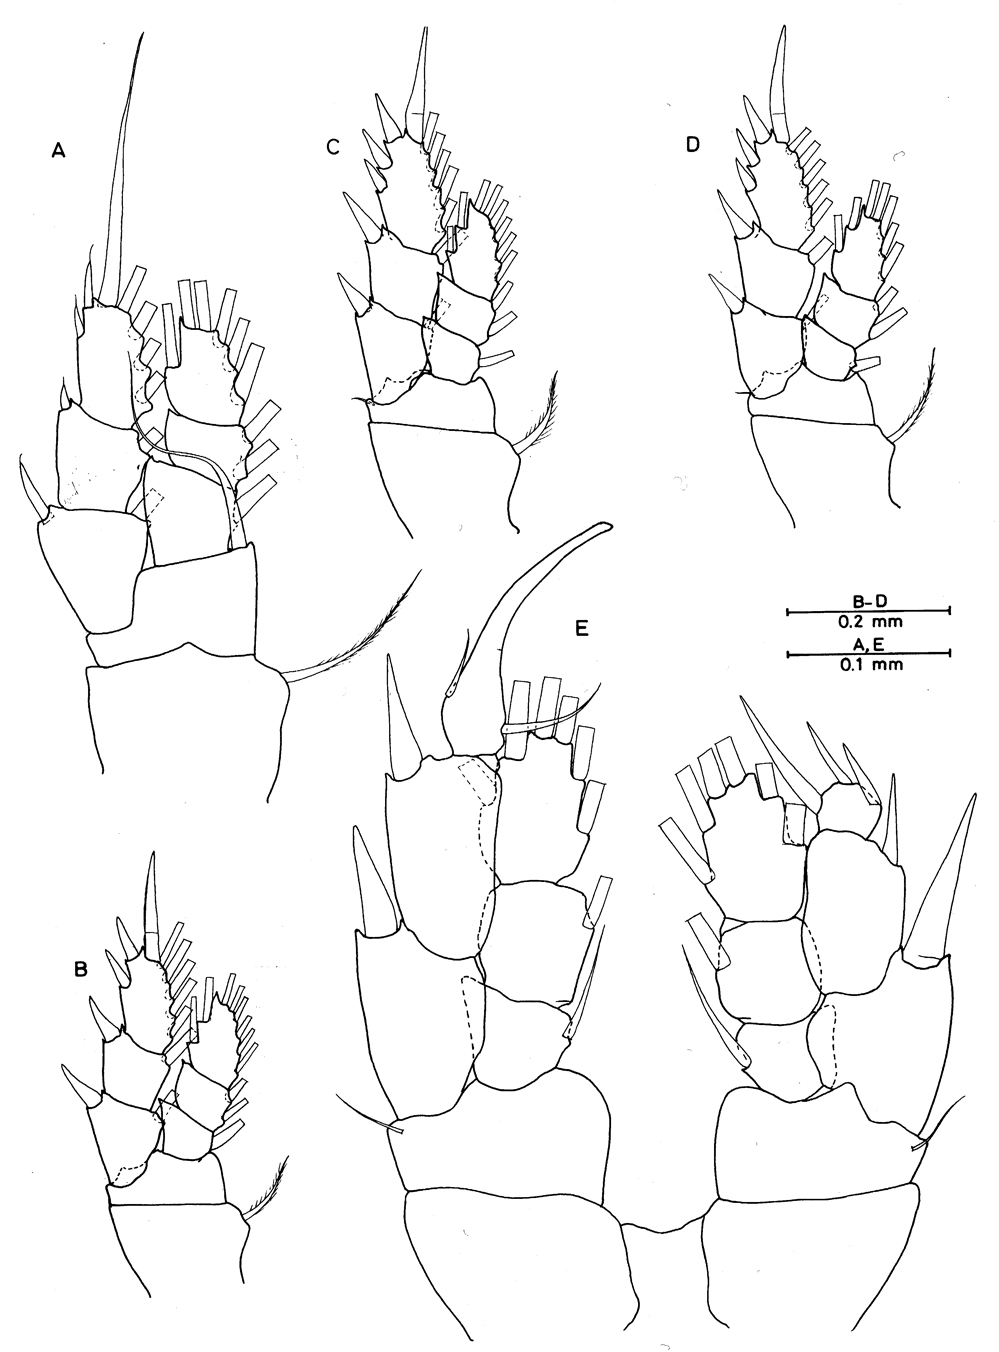 Espce Enantronoides bahamensis - Planche 2 de figures morphologiques